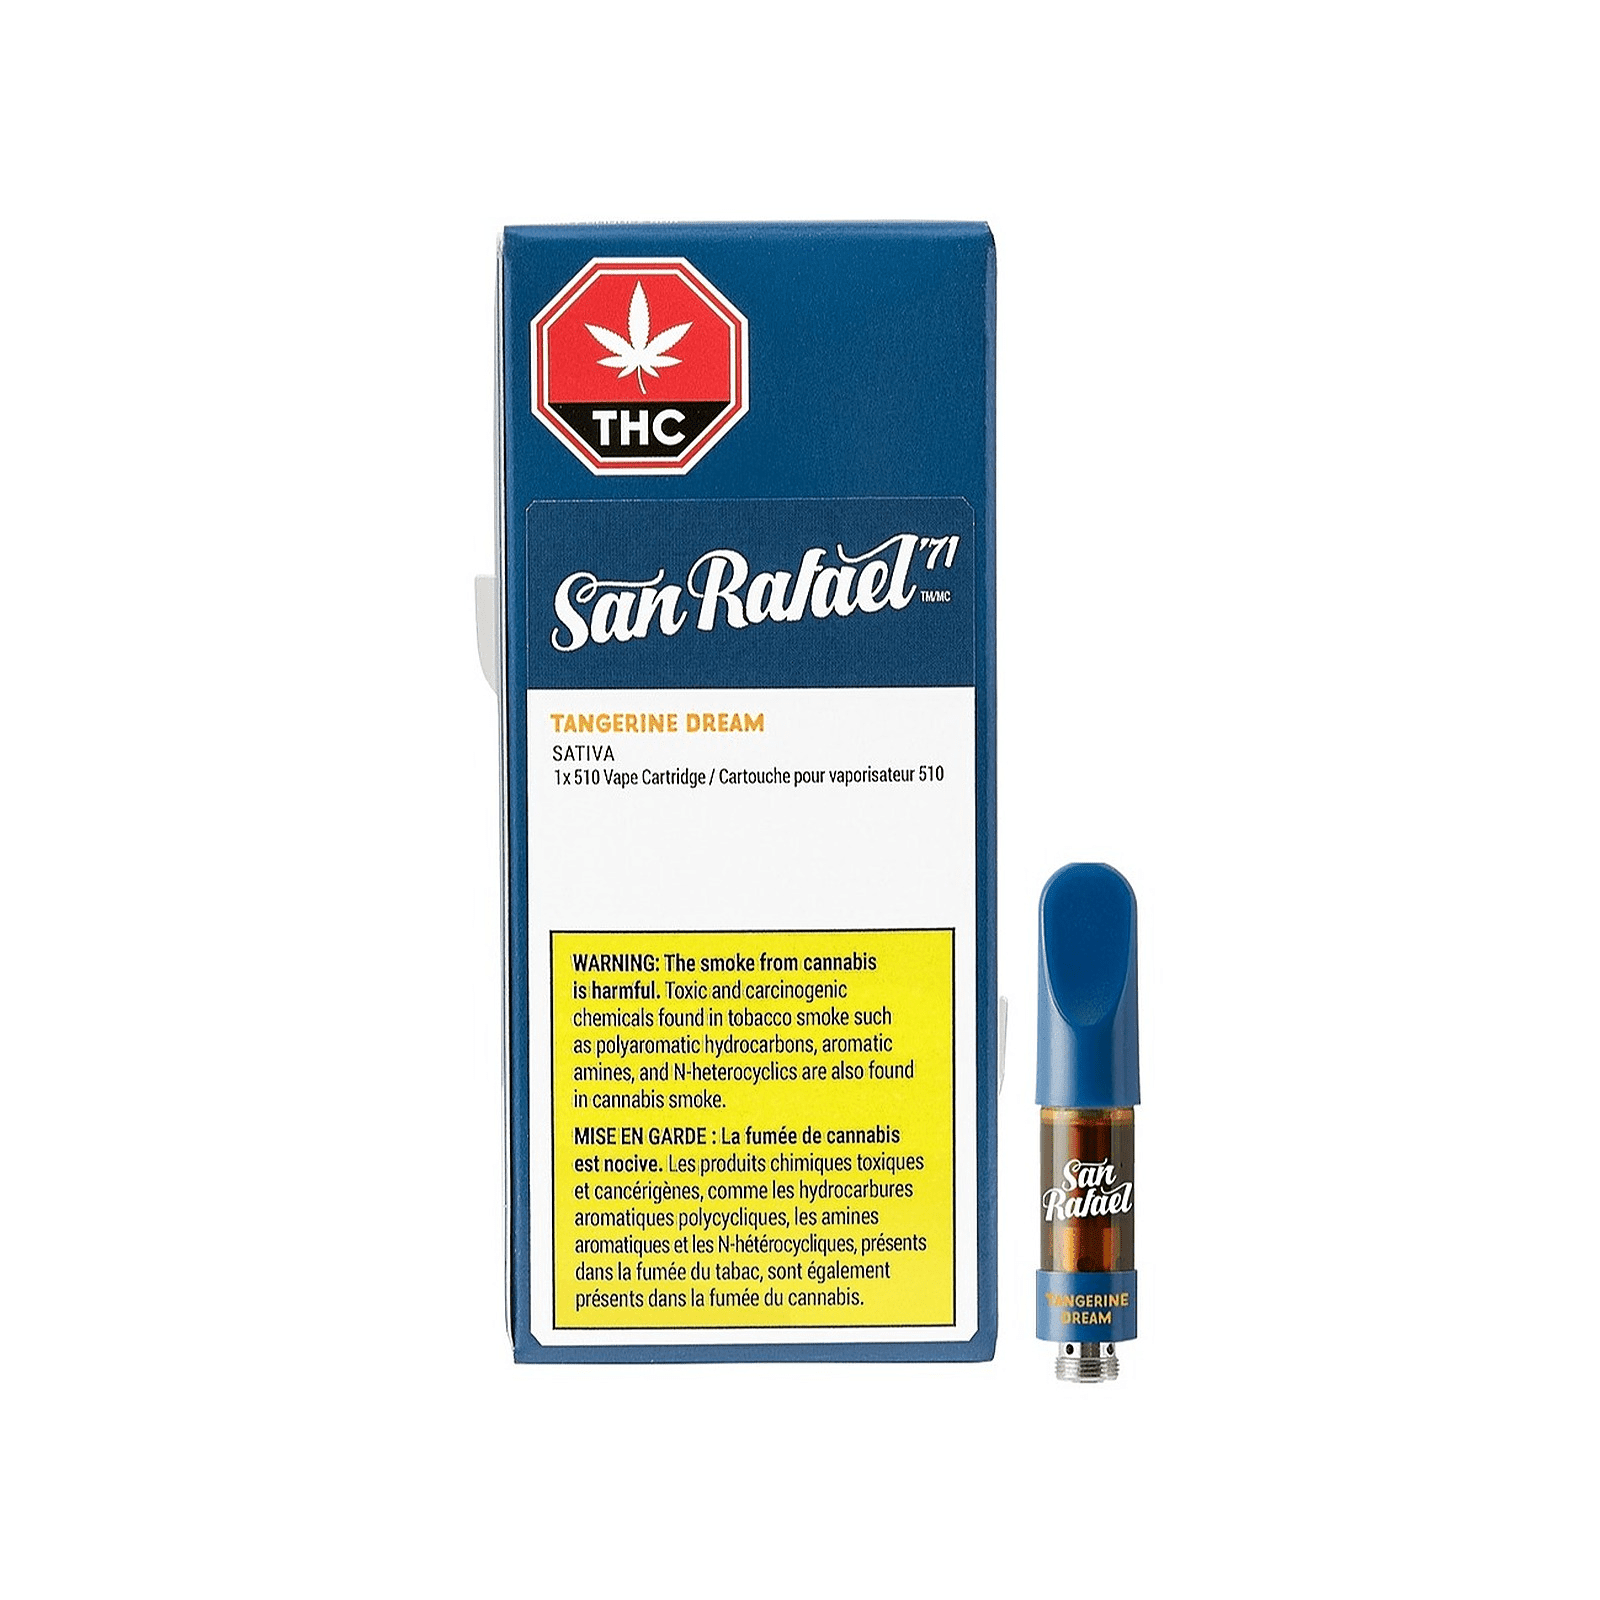 San Rafael '71 1g Cartridges